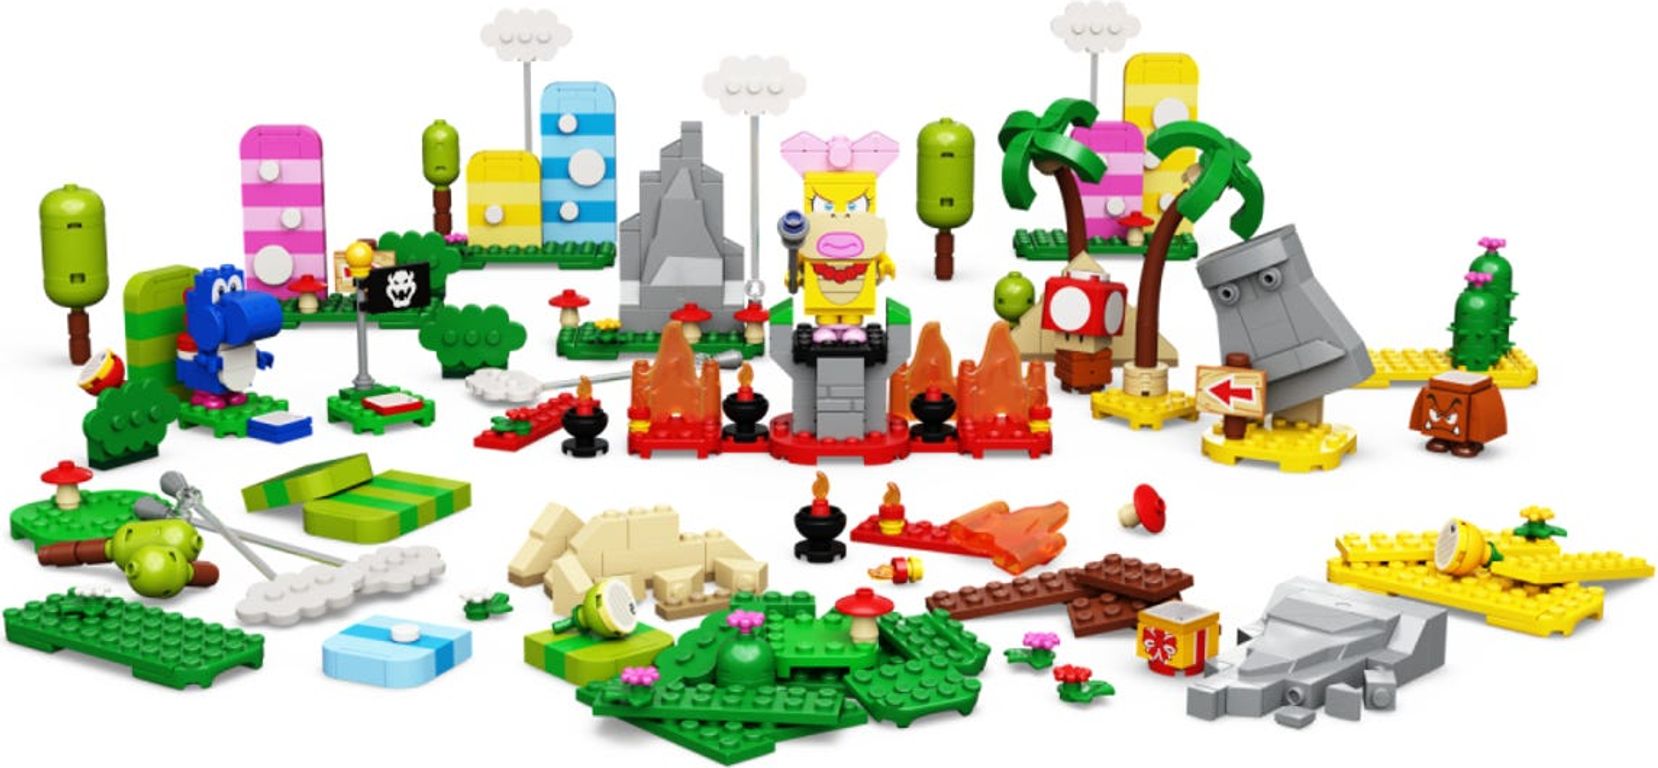 LEGO® Super Mario™ Creativity Toolbox Maker Set components